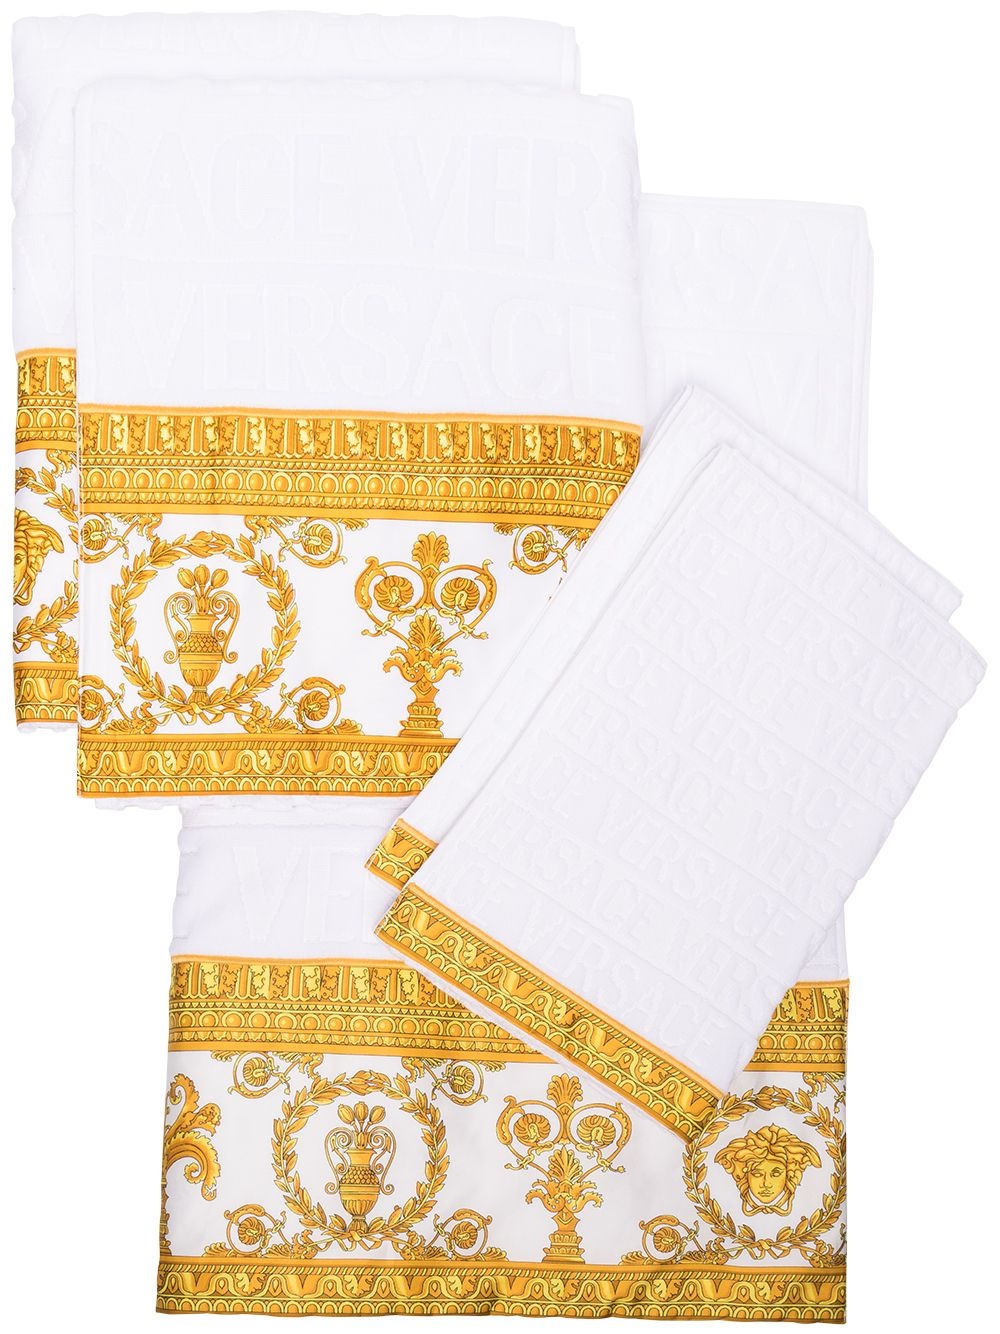 5-piece Barocco towel set - 1